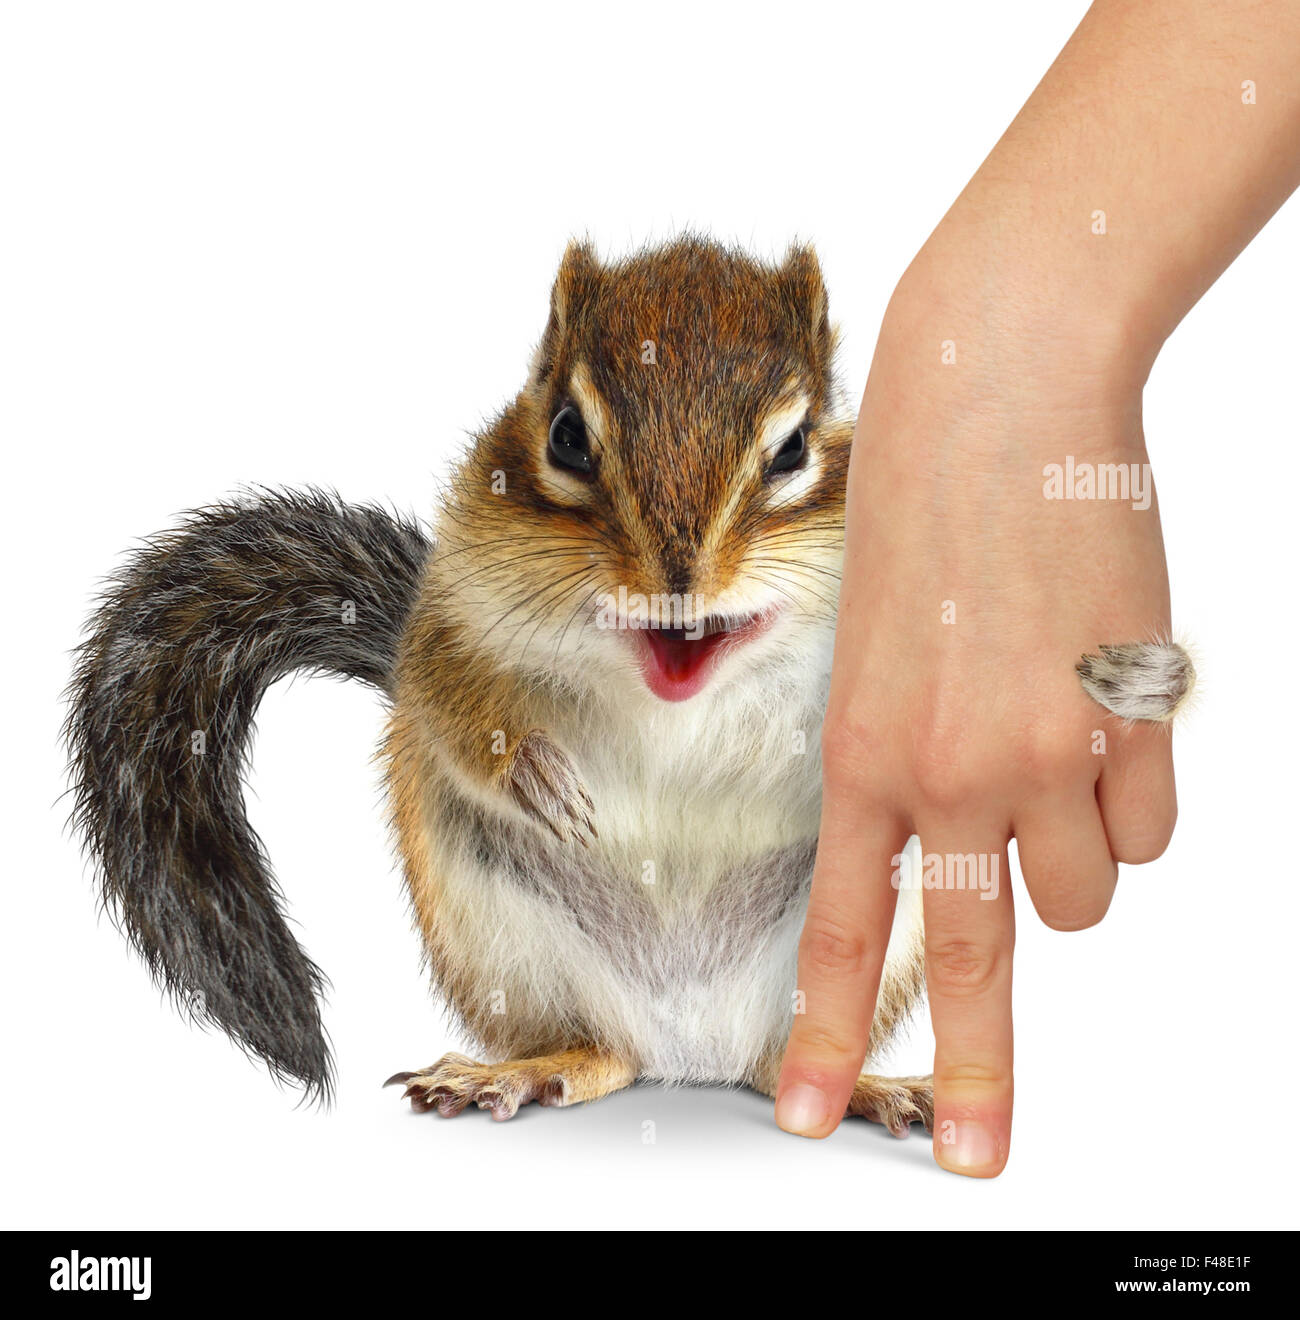 Concept de soins aux animaux, écureuil hugs main humaine sur fond blanc Banque D'Images